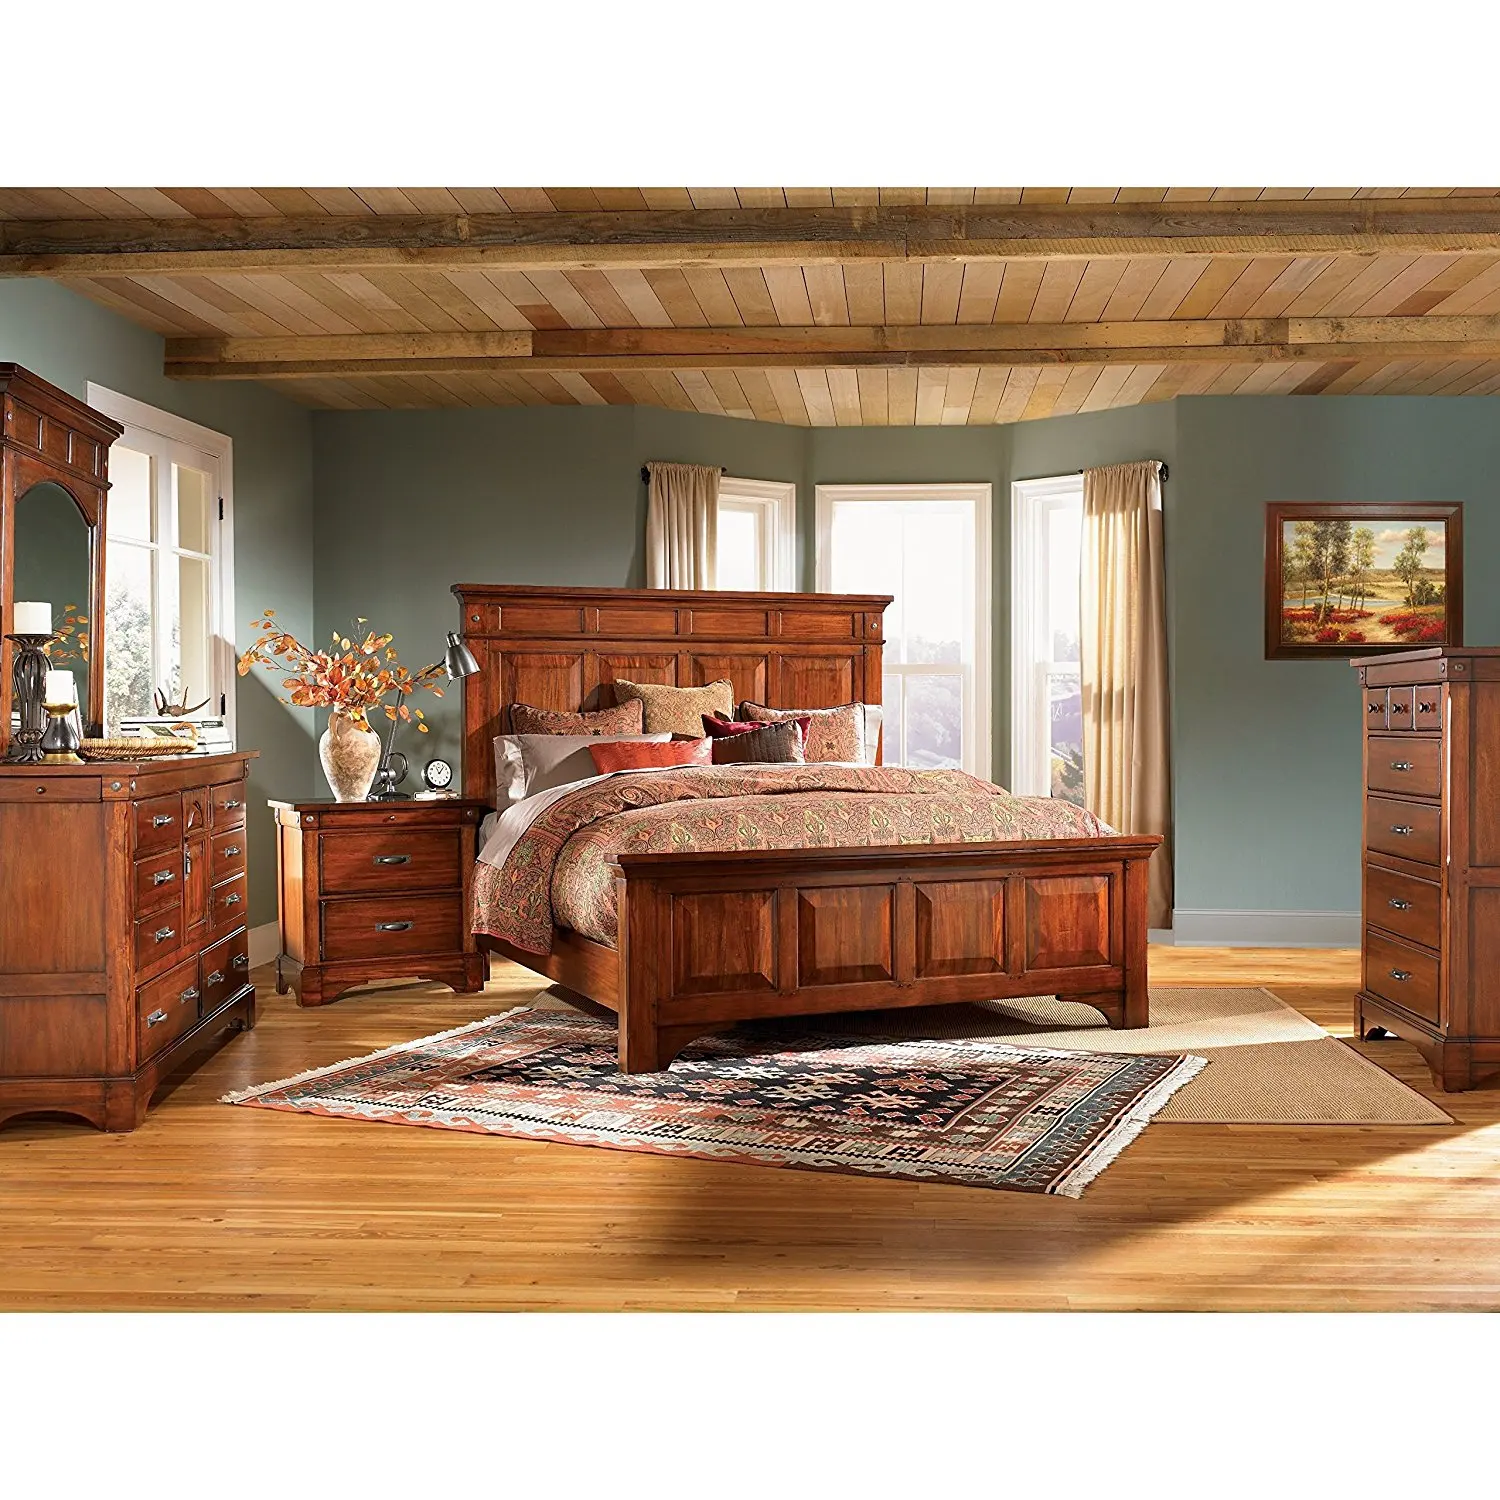 Wooden мебель. Спальня из дерева. Комната с деревянной мебелью. Спальни из массива дерева. Спальня с деревянной мебелью.